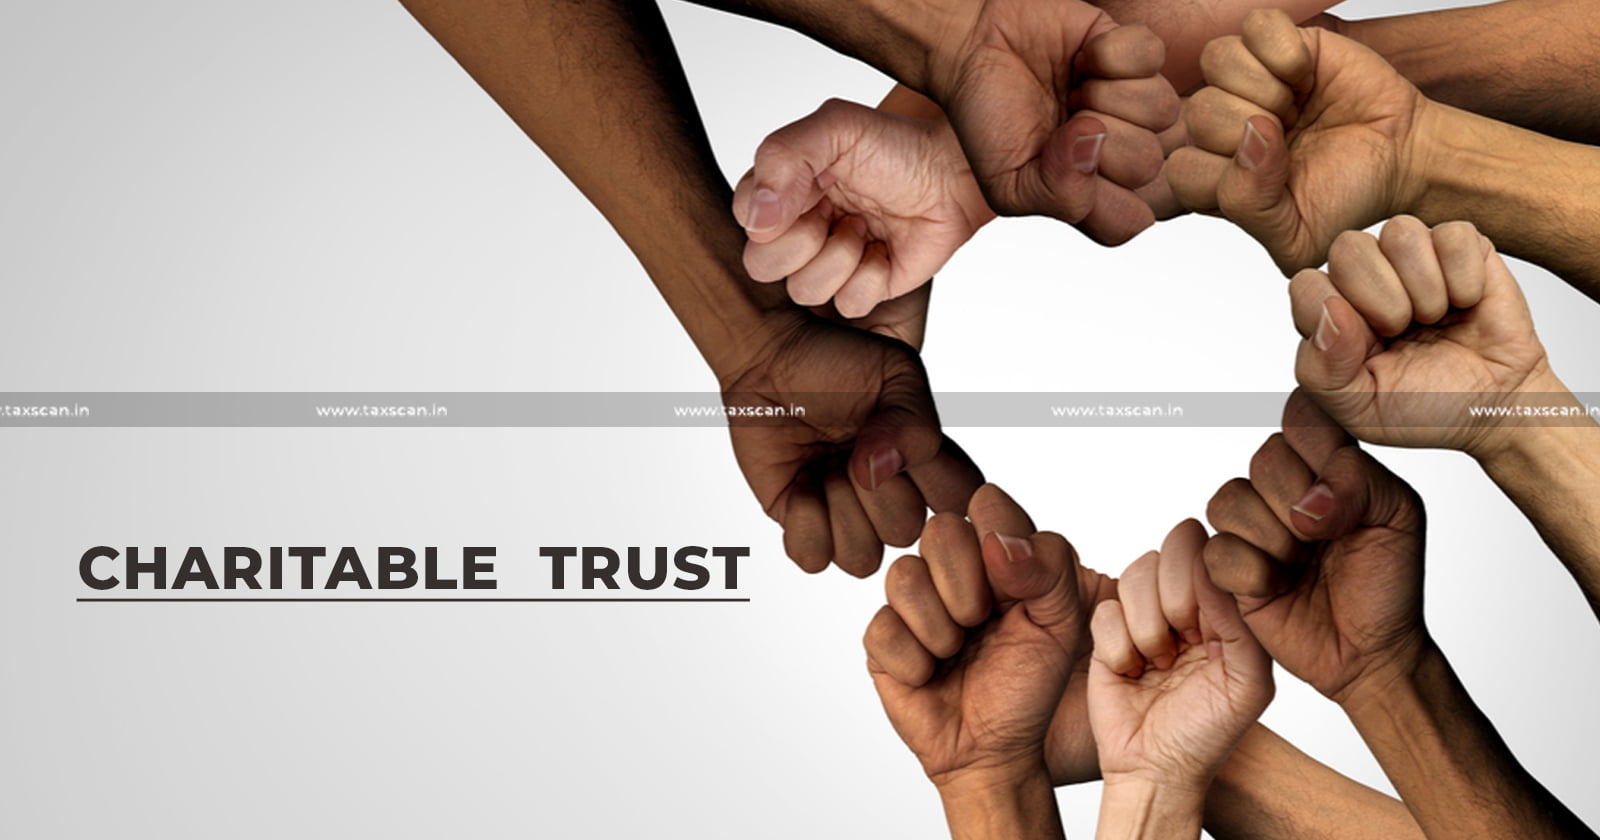 ITAT - ITAT Pune - Income Tax - Charitable trust - Taxation for trusts - Trust registration - taxscan